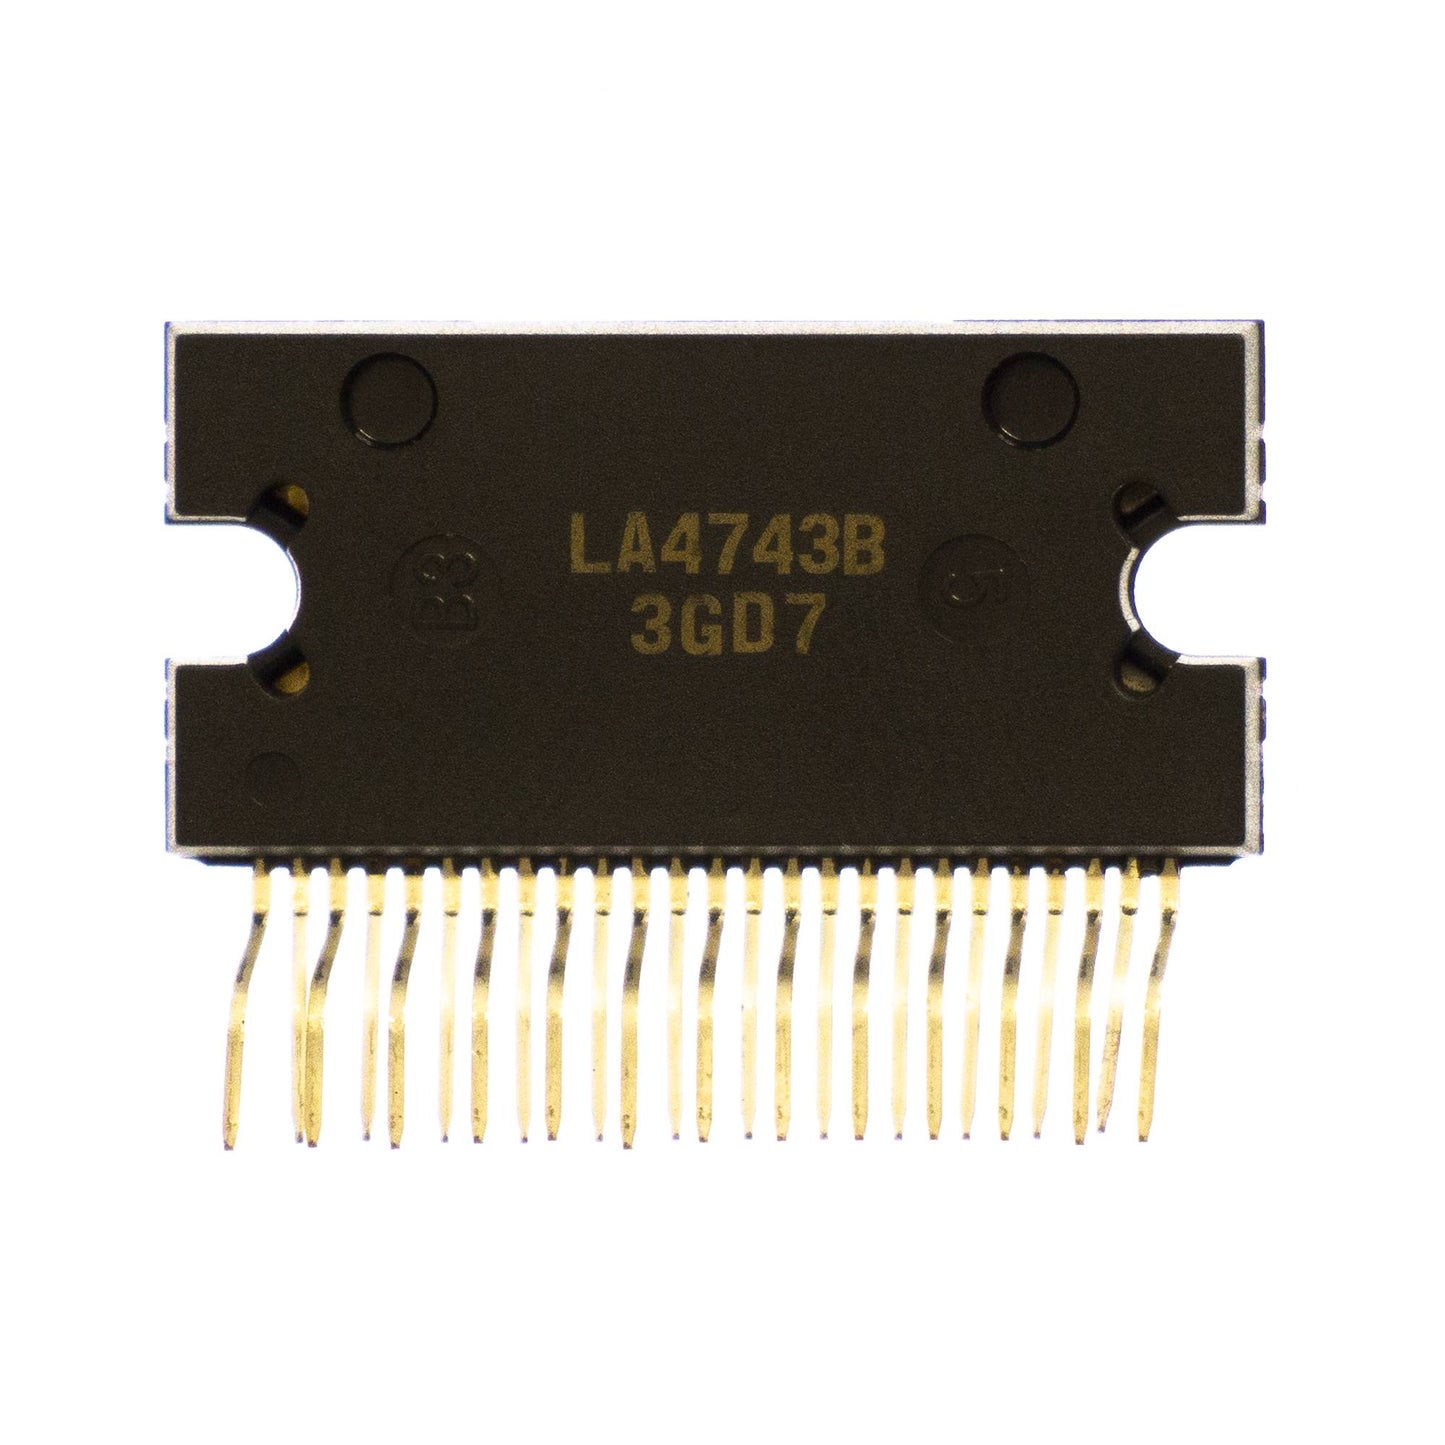 LA4743B componente elettronico, circuito integrato, transistor, 25 contatti